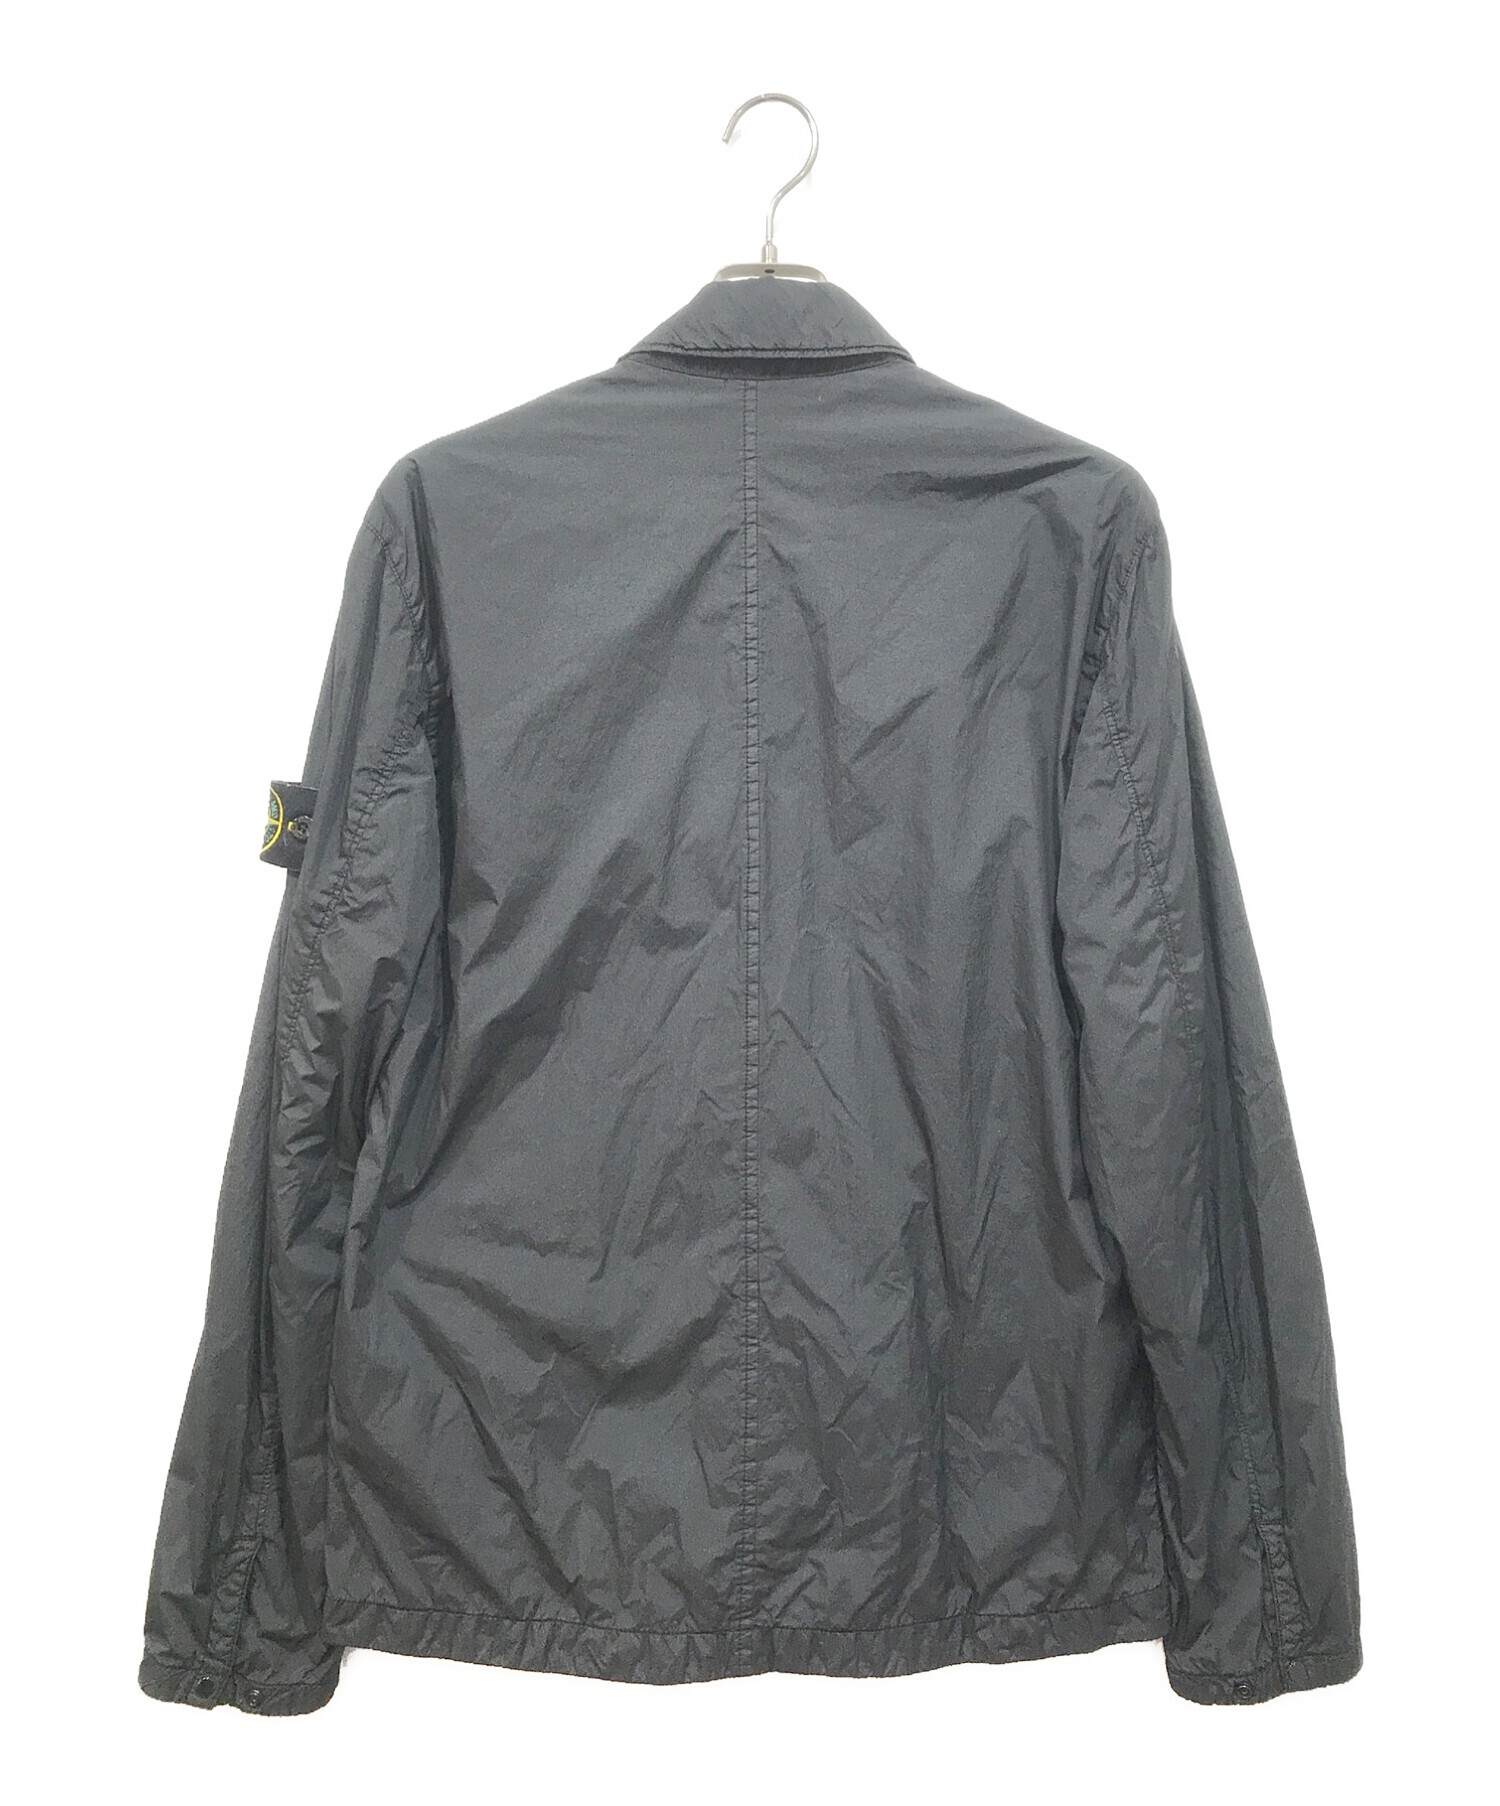 STONE ISLAND (ストーンアイランド) ナイロンシャツジャケット ブラック サイズ:M